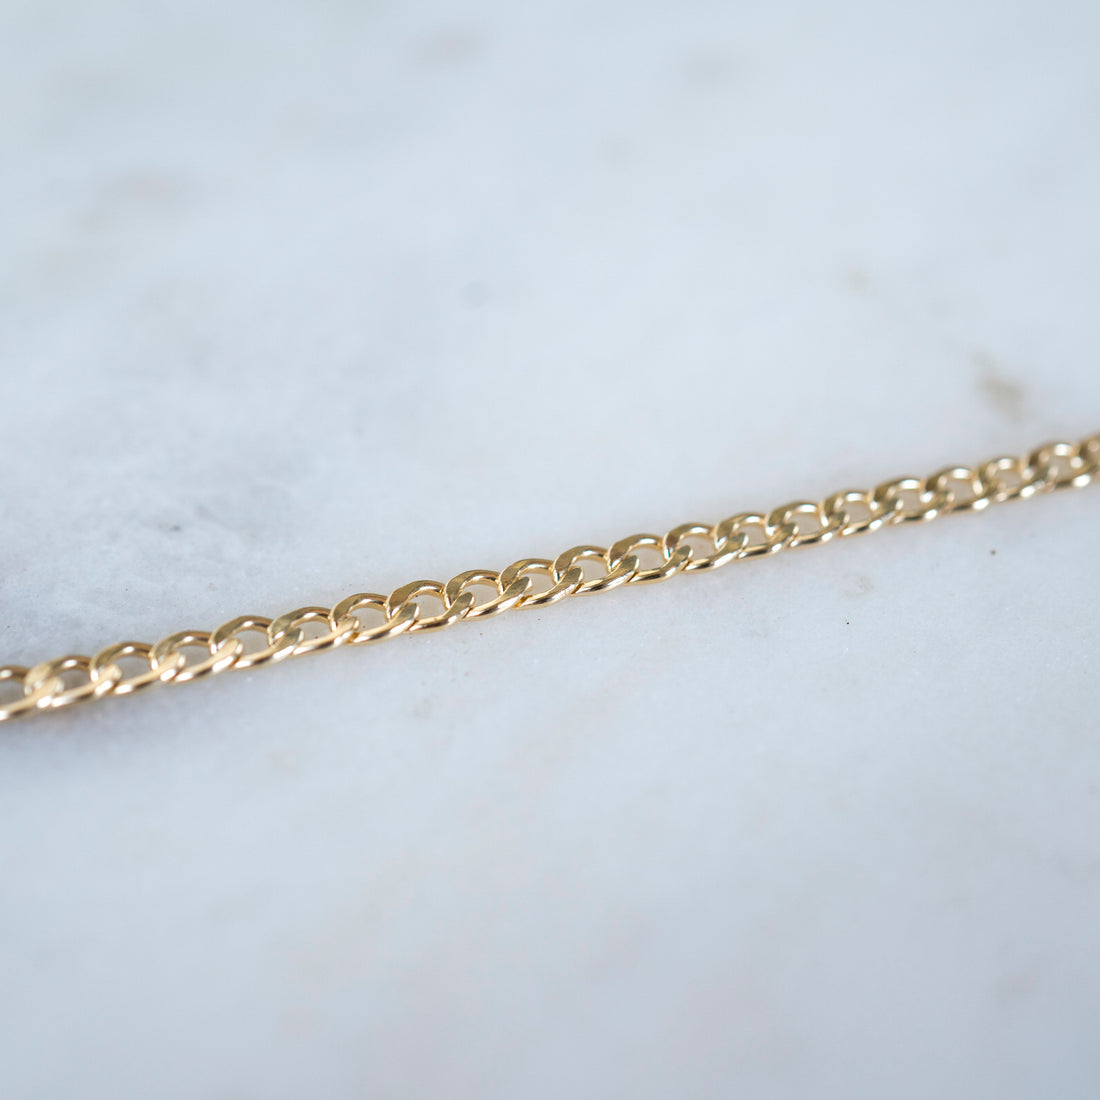 Gold Curb Link Bracelet, 14k Gold Bracelet, Simple Gold Bracelet, Chain and Link Bracelet, Bracelet, Chain Bracelet, Dainty Bracelet